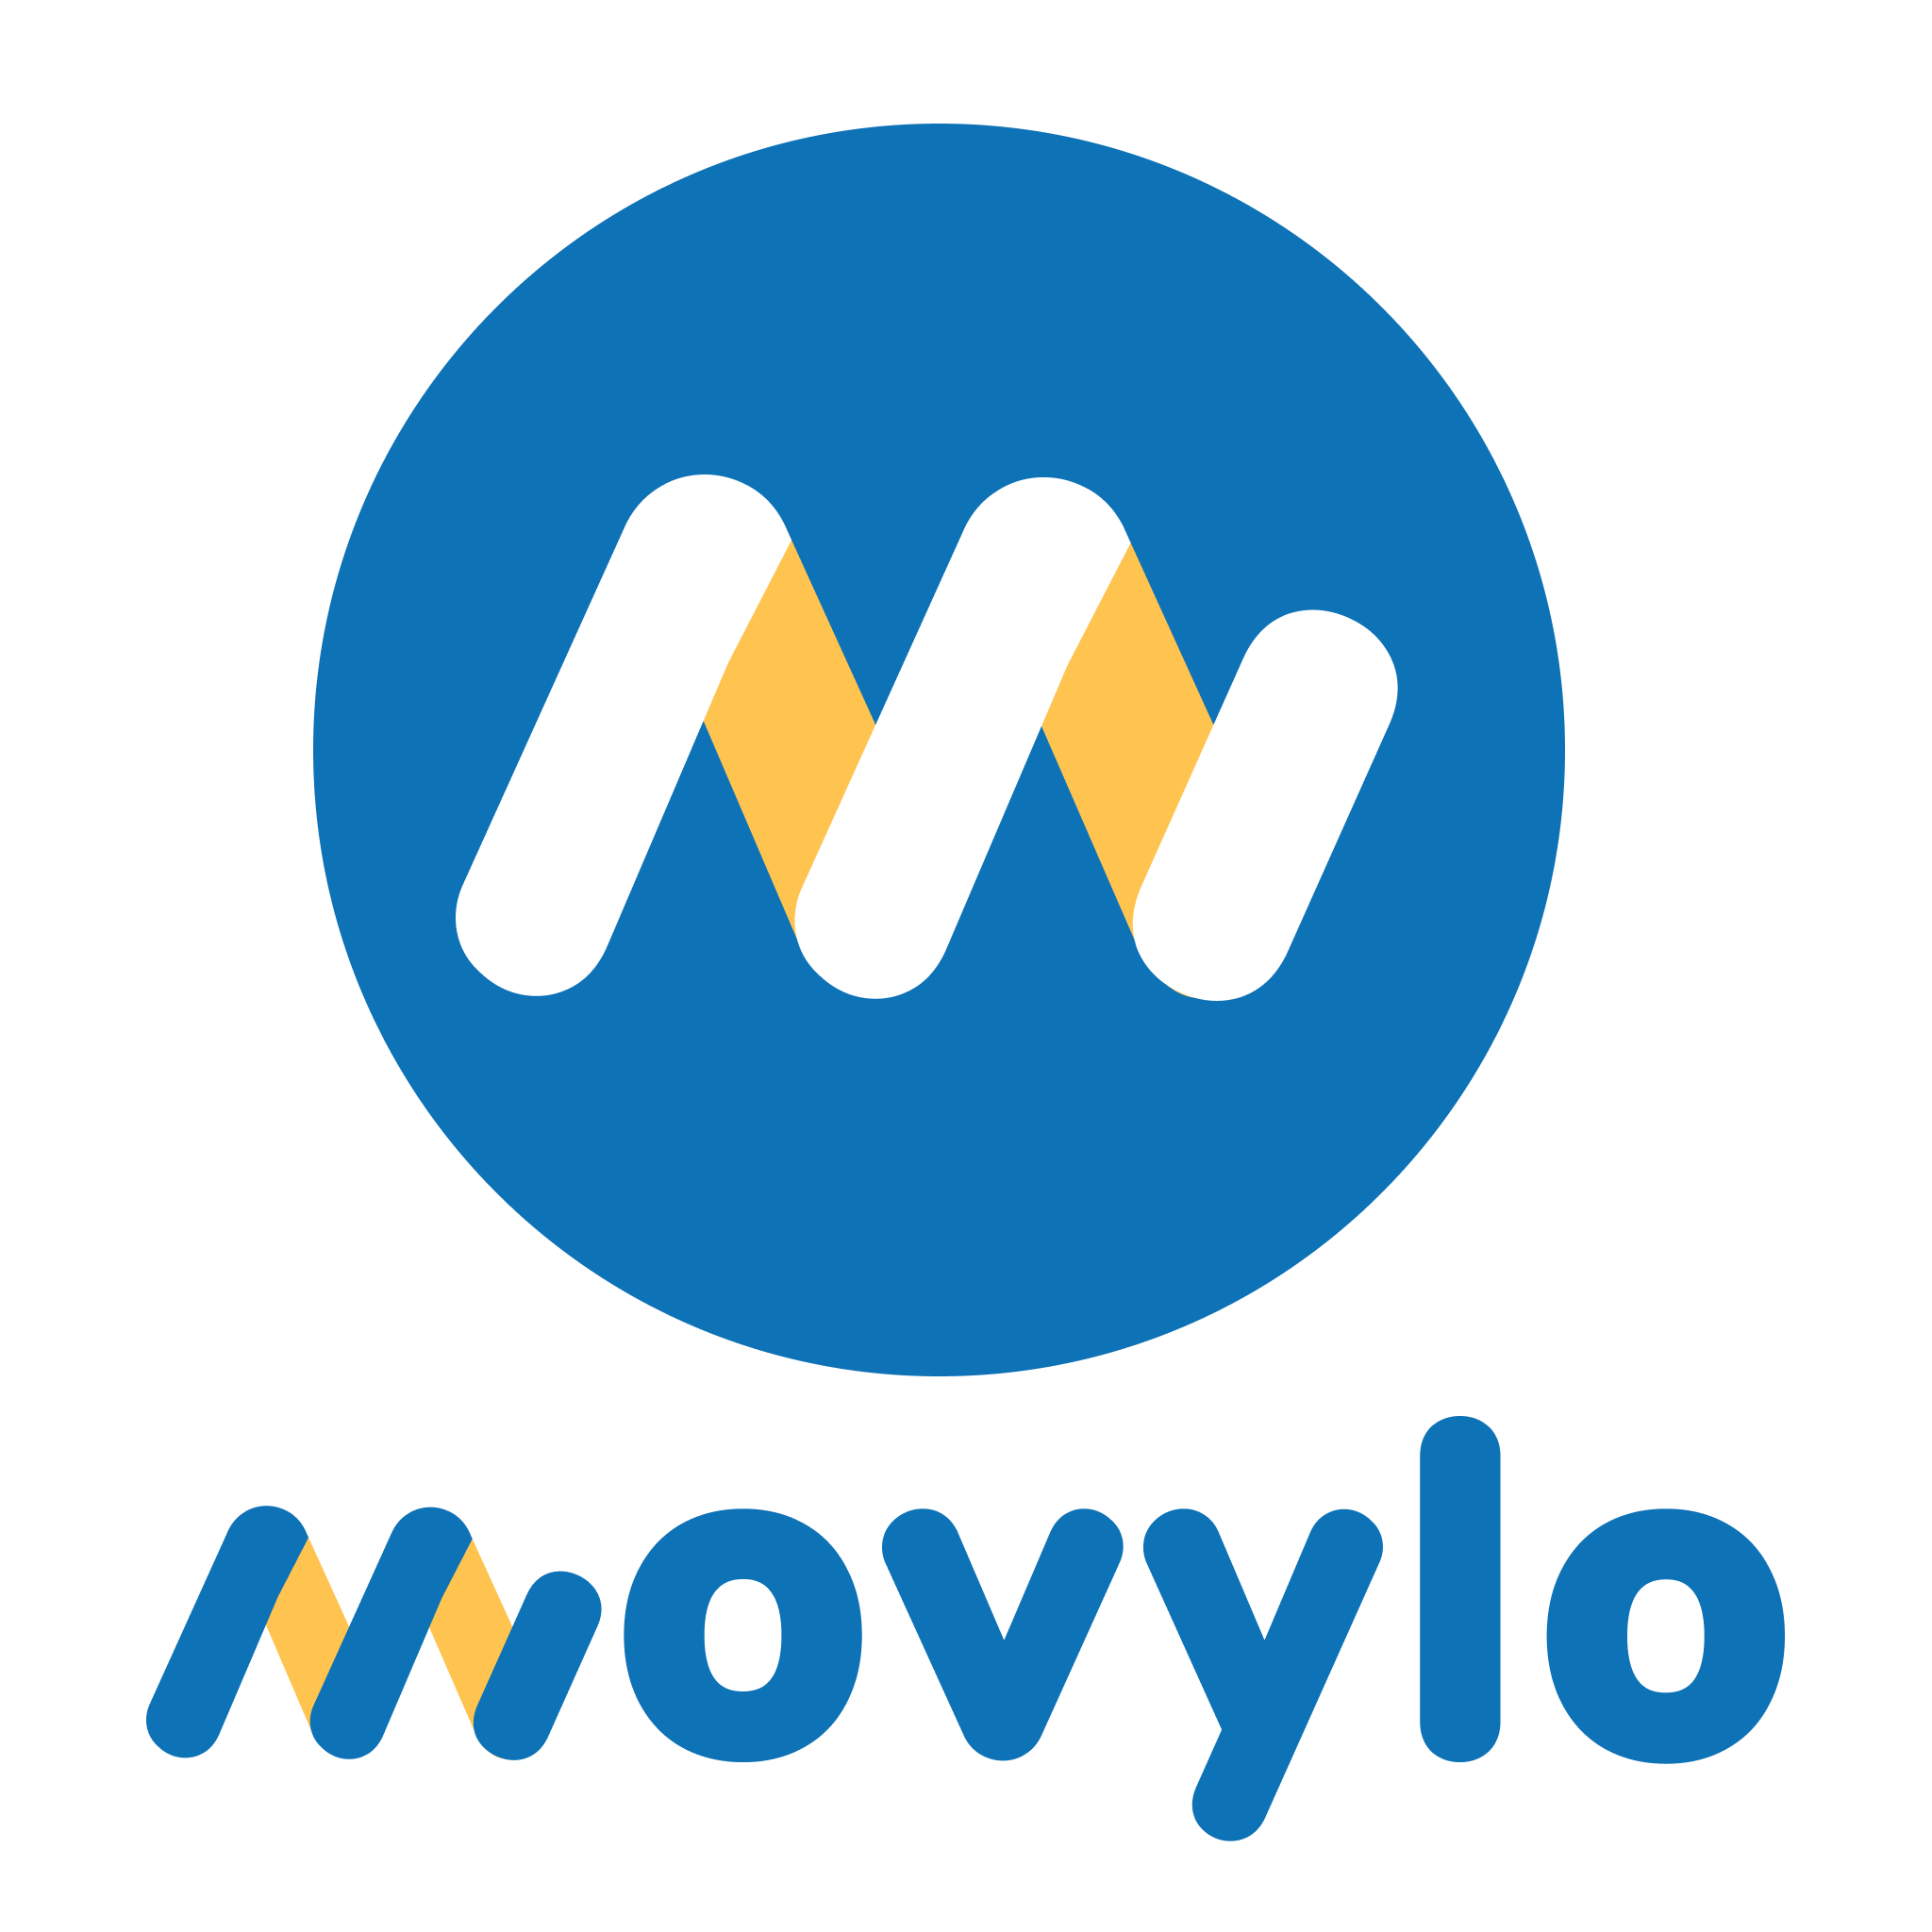 (c) Movylo.com